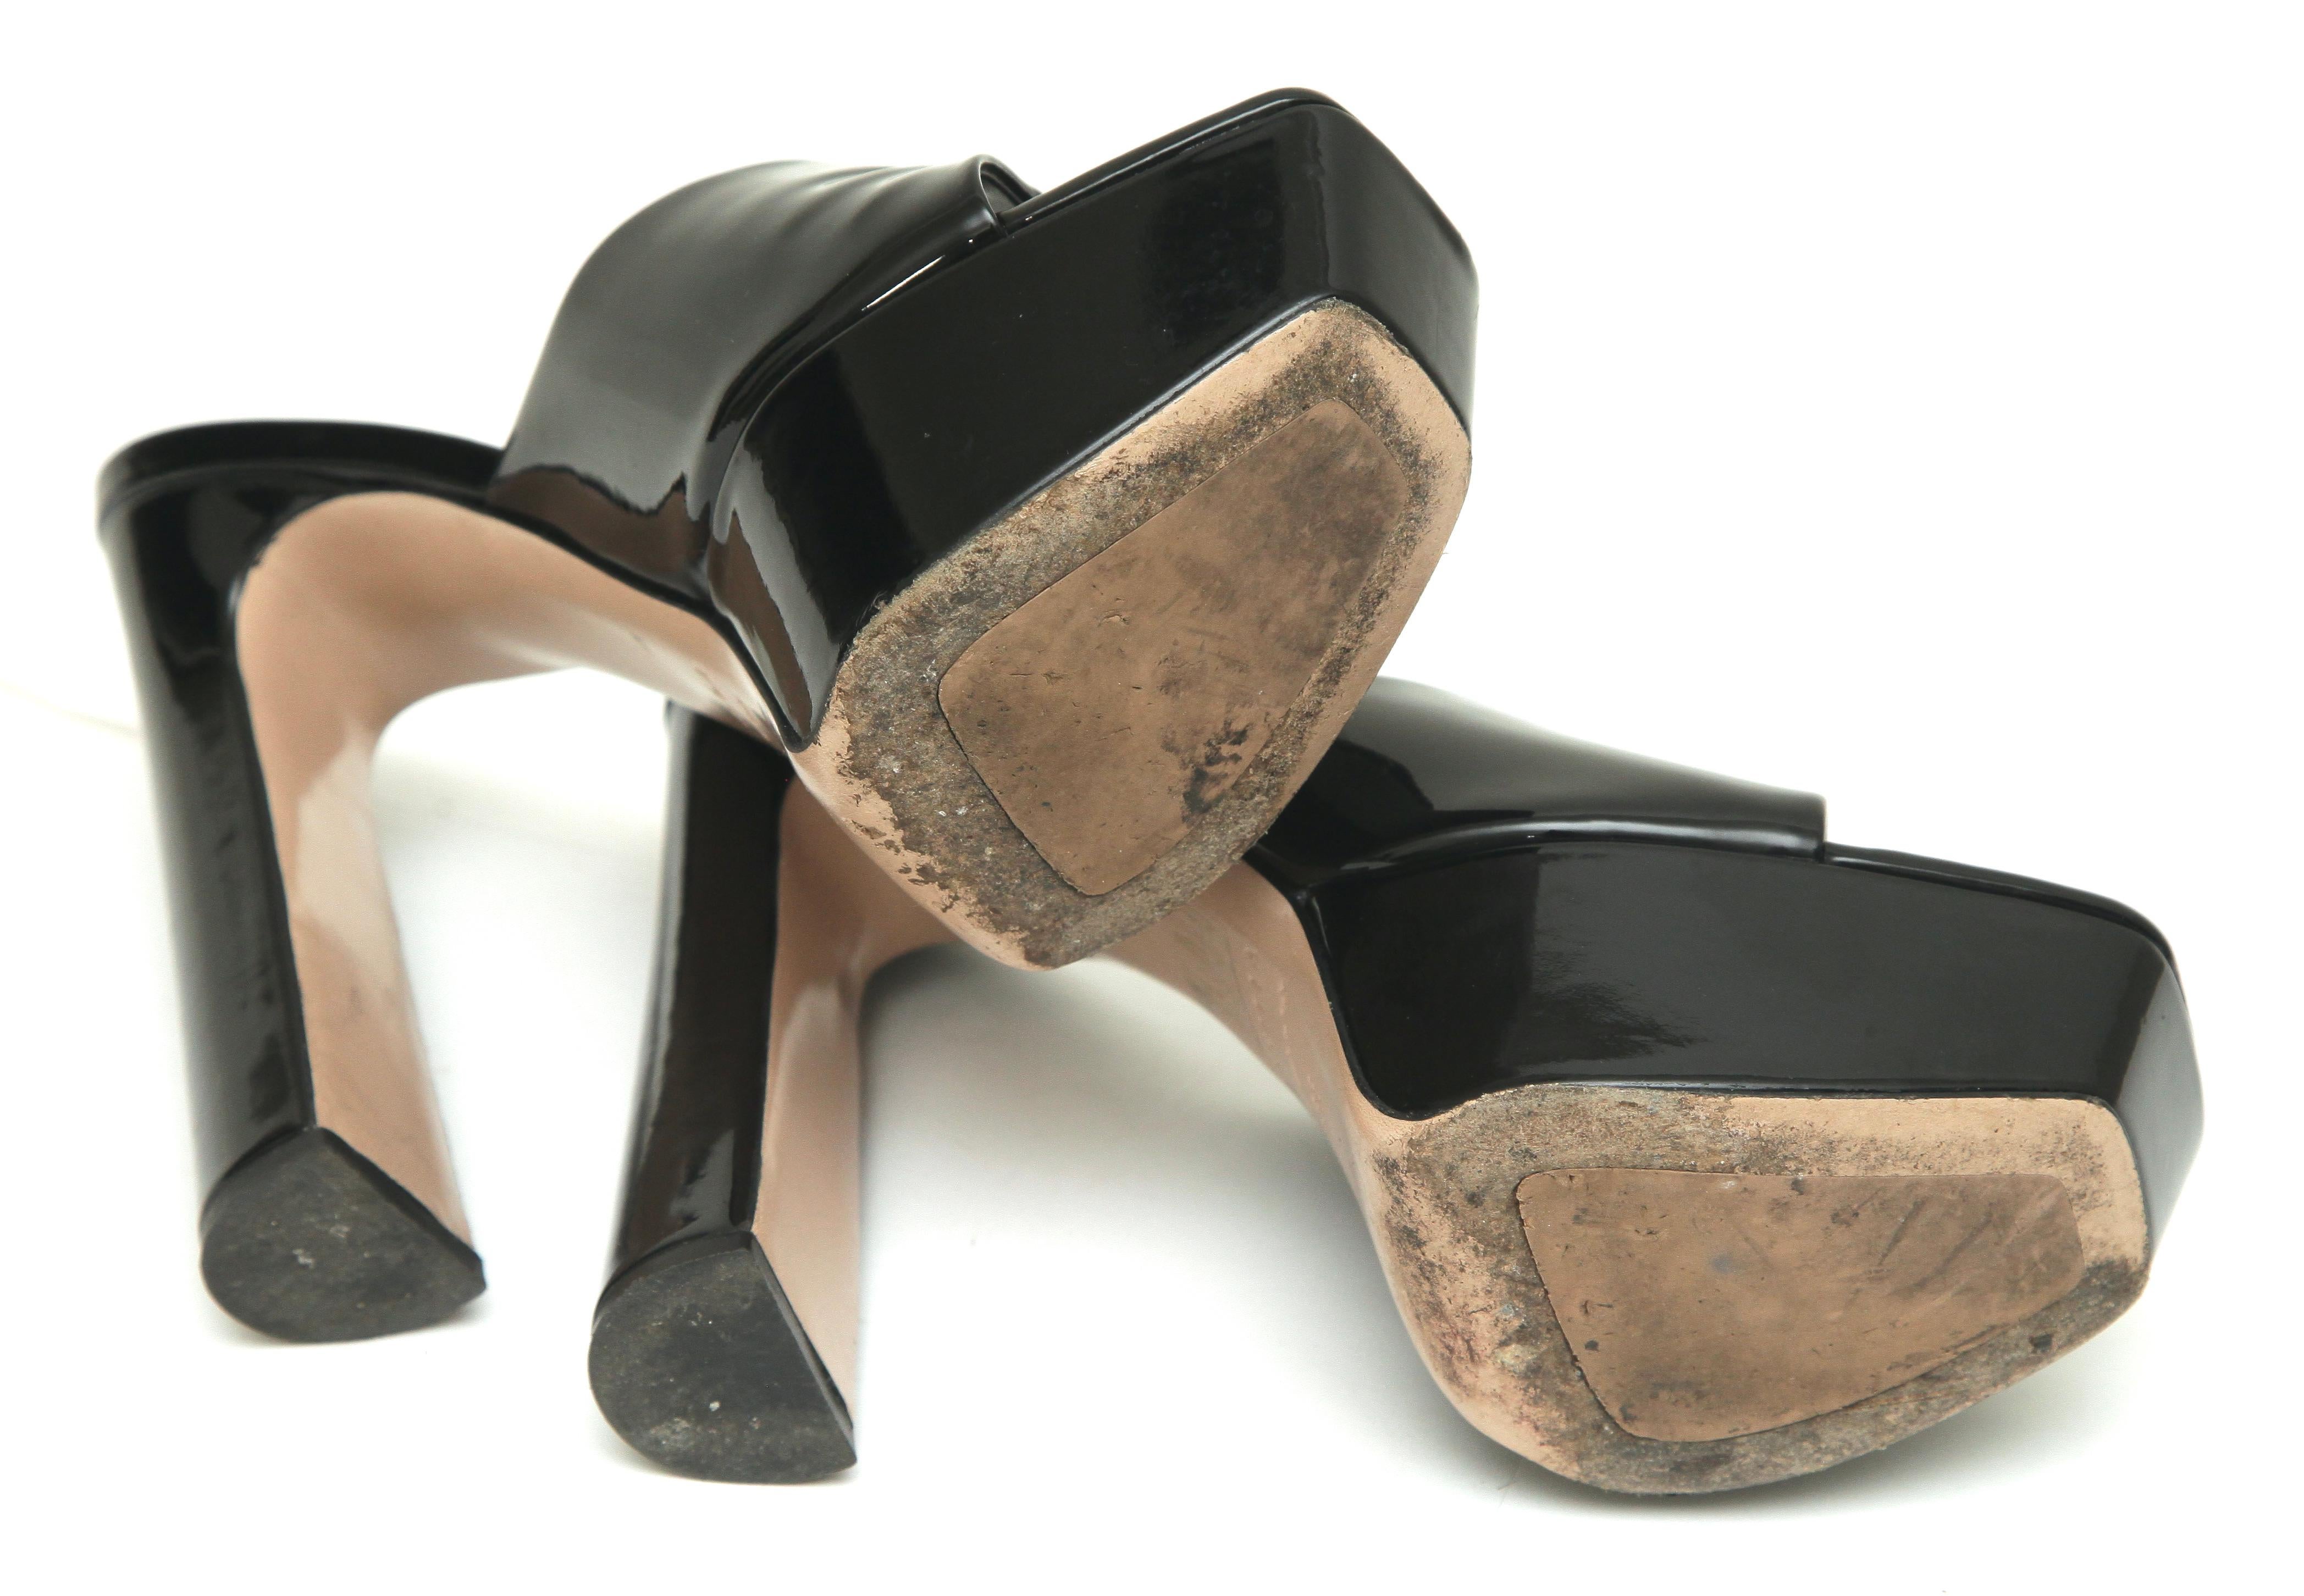 LE SILLA Black Patent Leather RESORT Mule Sandal Platform Heel Slip On 38 $790 For Sale 5